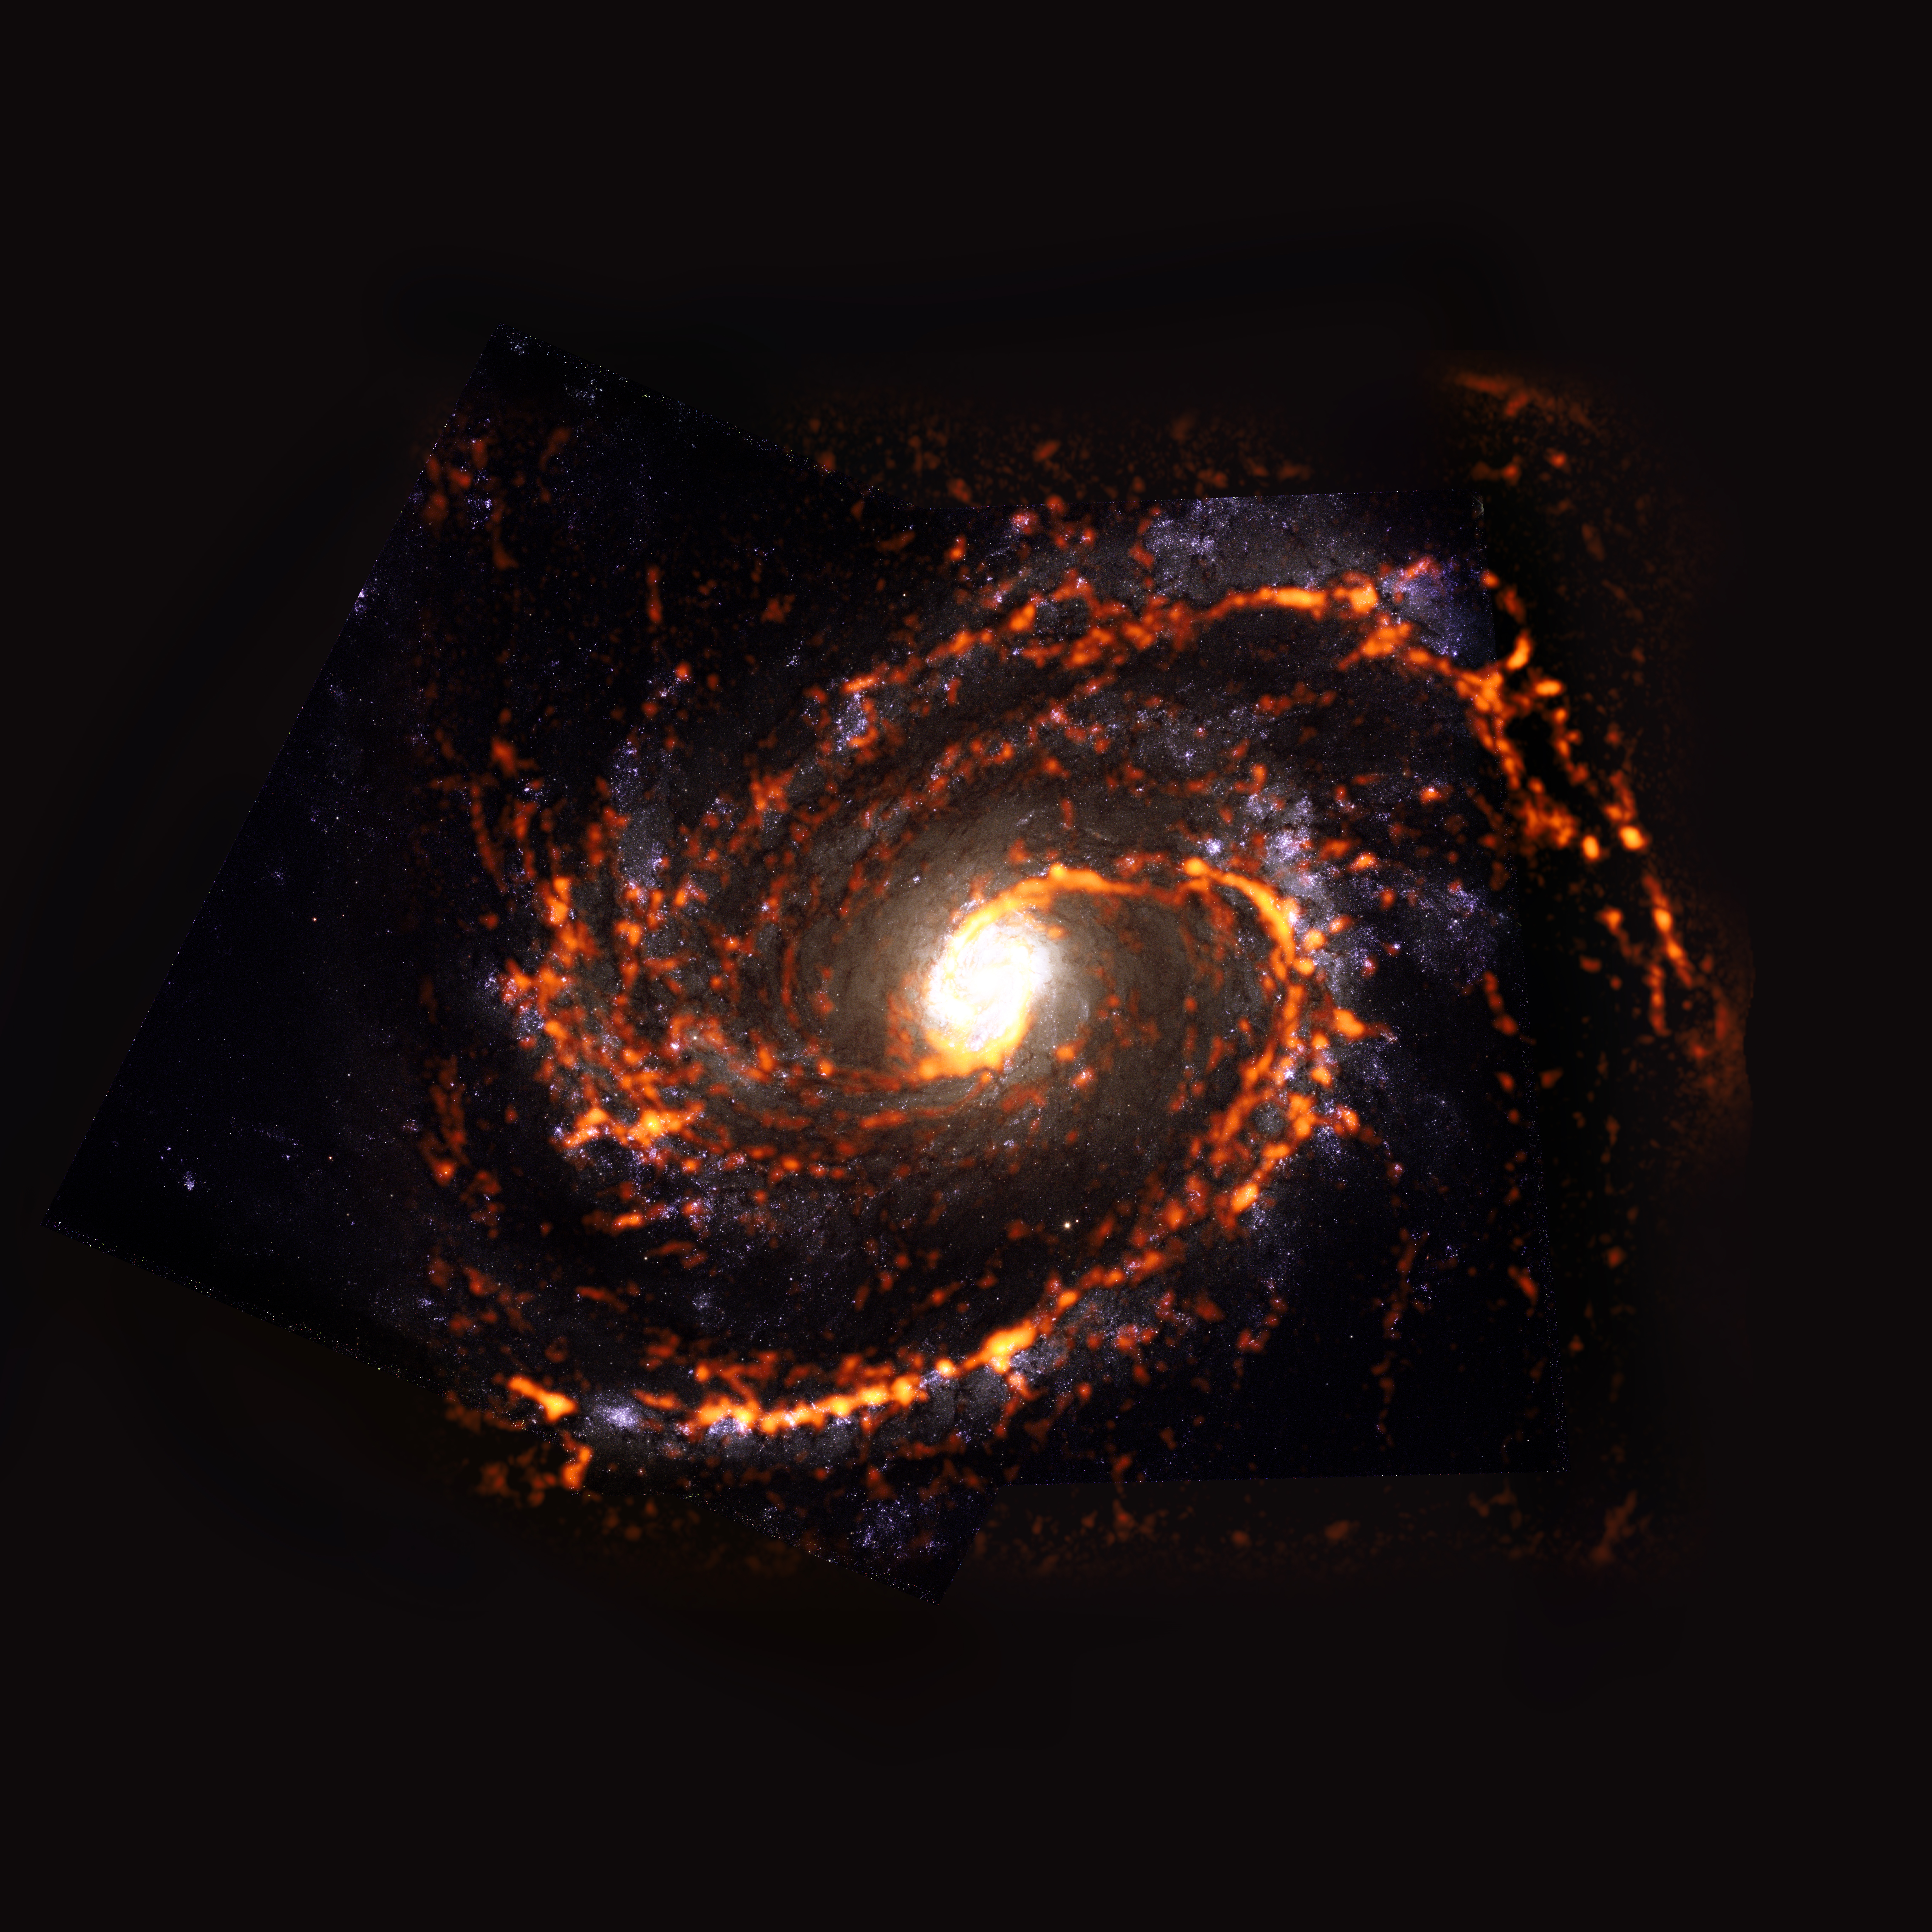 PHANGS-ALMA Survey: NGC4321